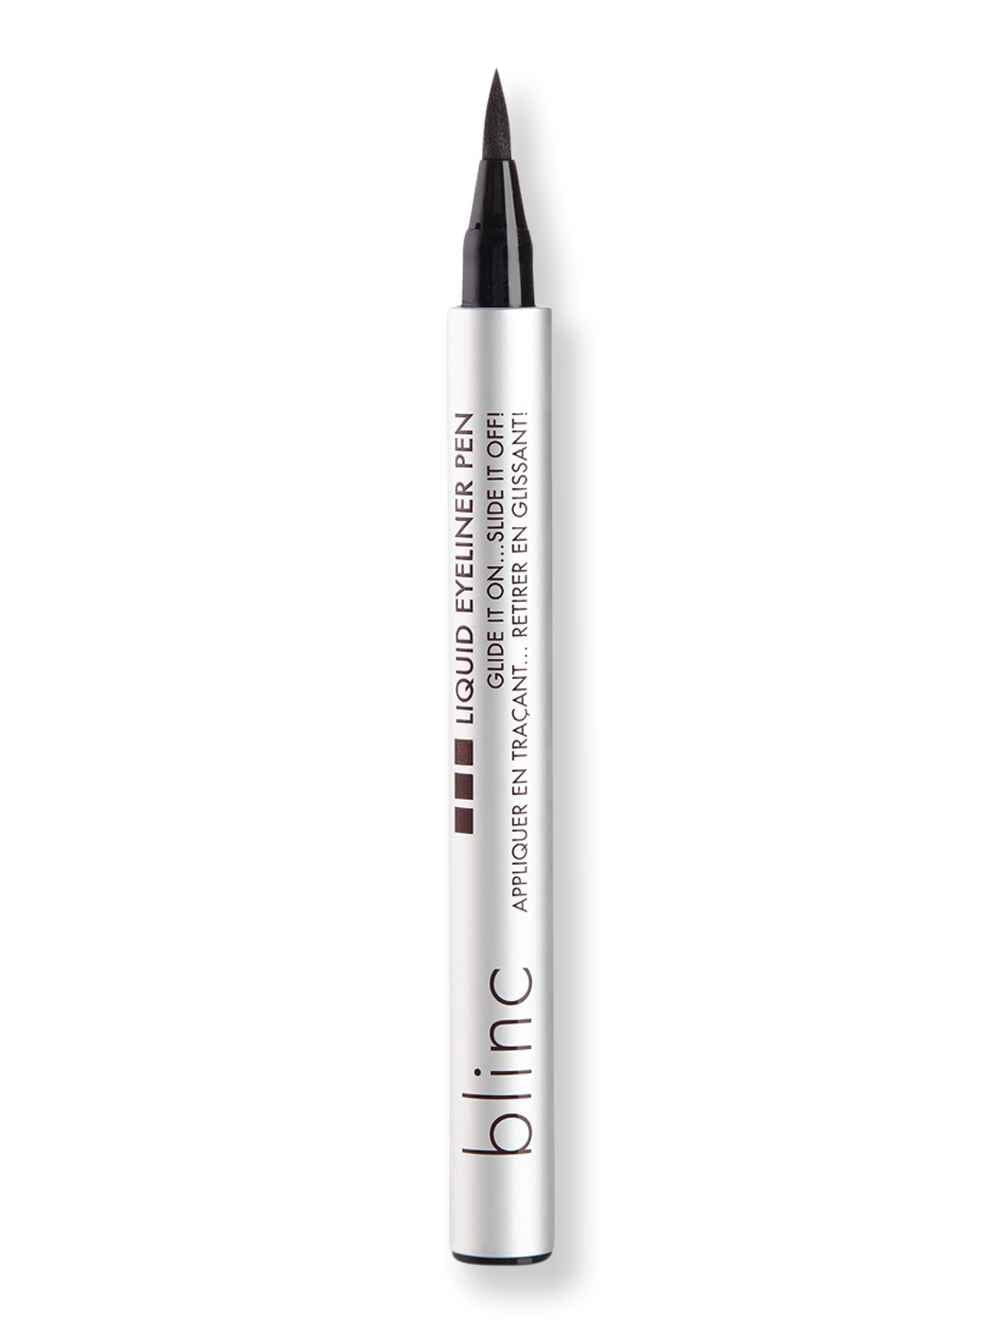 Blinc Blinc Liquid Eyeliner Pen Soft Black Sheen Eyeliners 